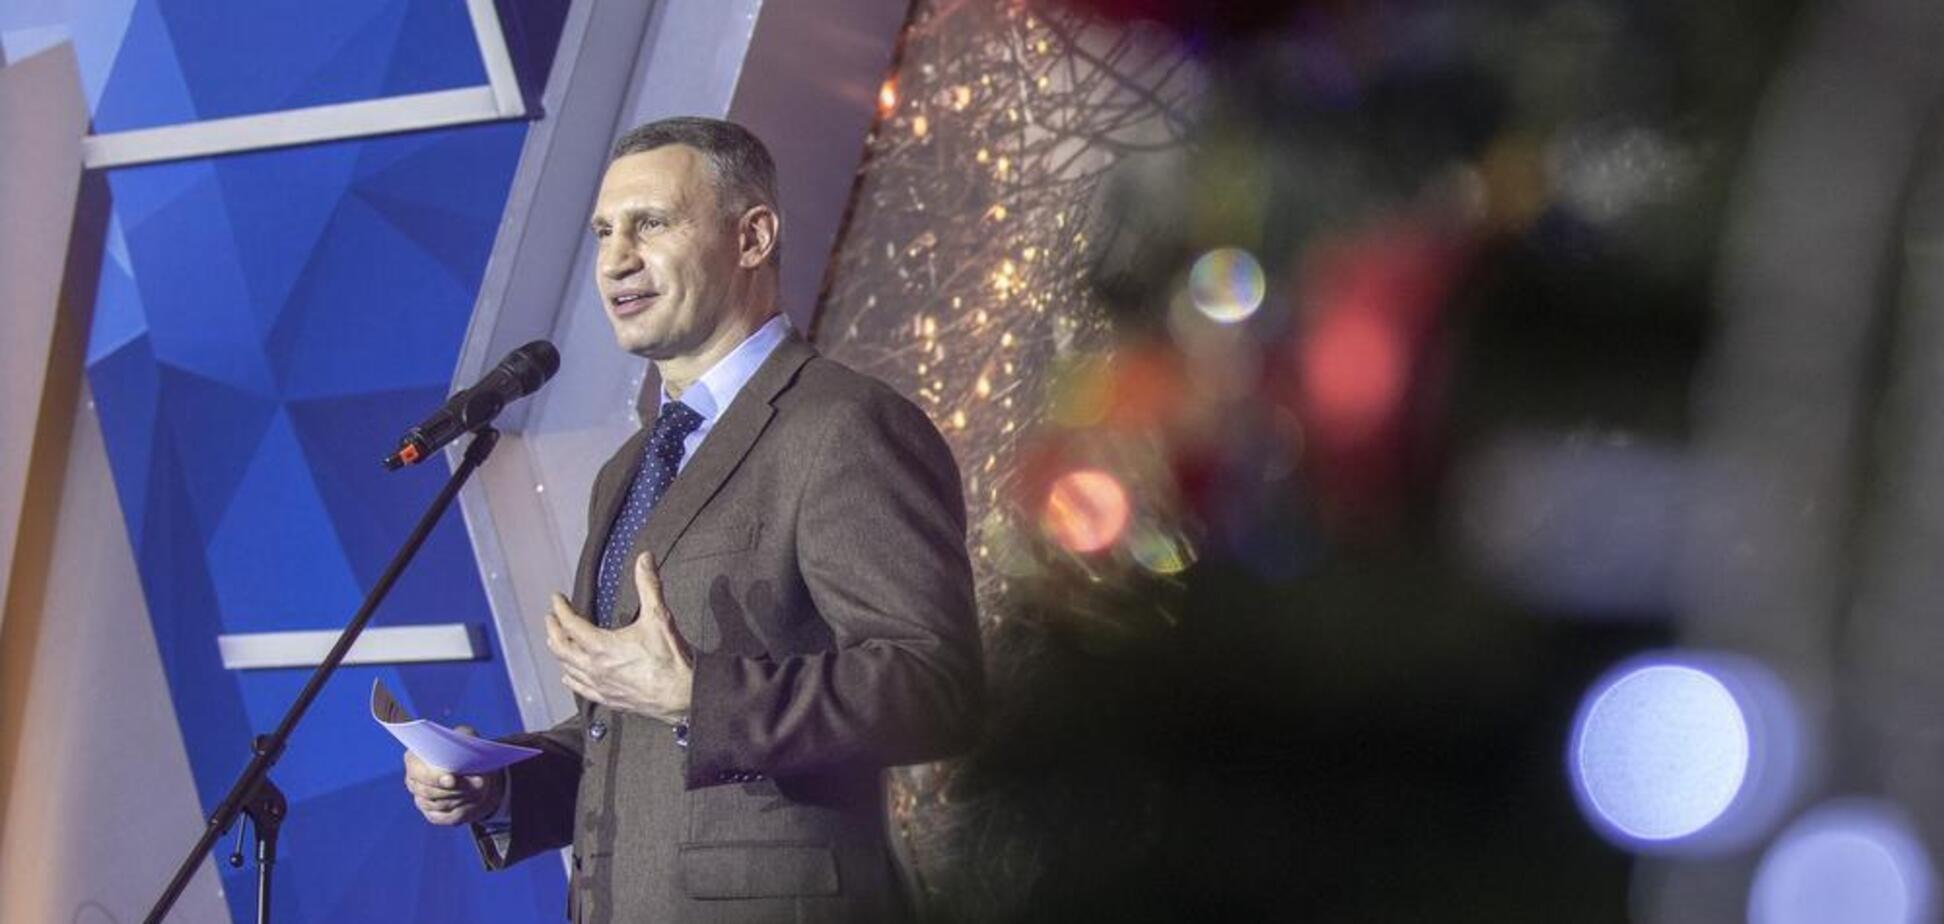 Кличко провел в мэрии дипломатический прием по случаю Нового года и Рождества